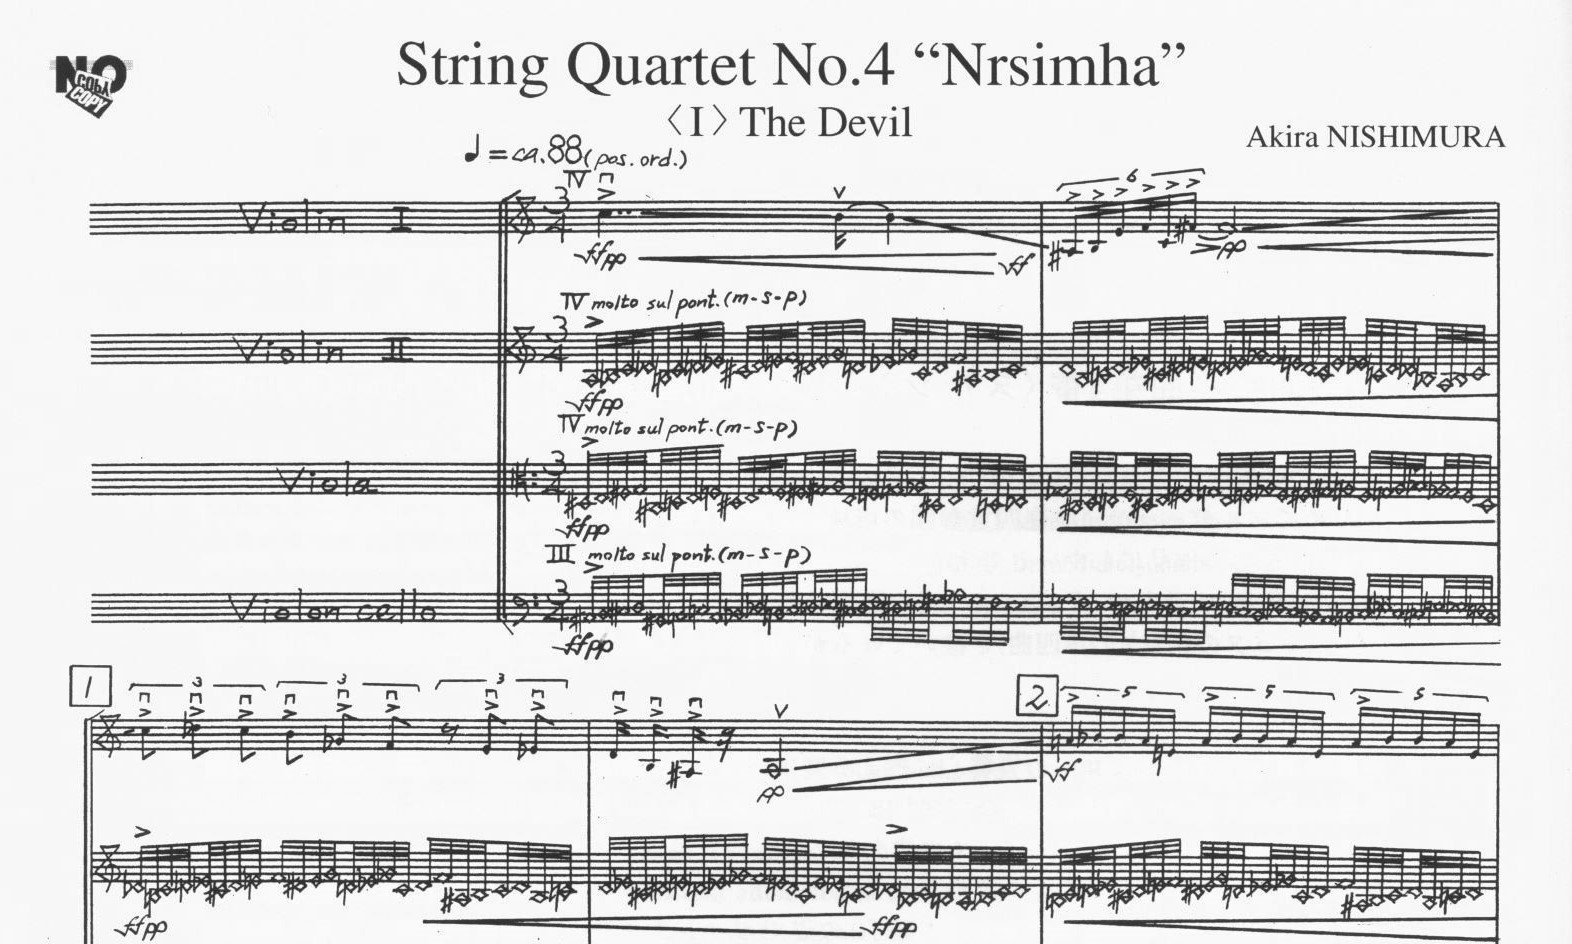 String Quartet No. 4: "Nrsimha" - Akira Nishimura